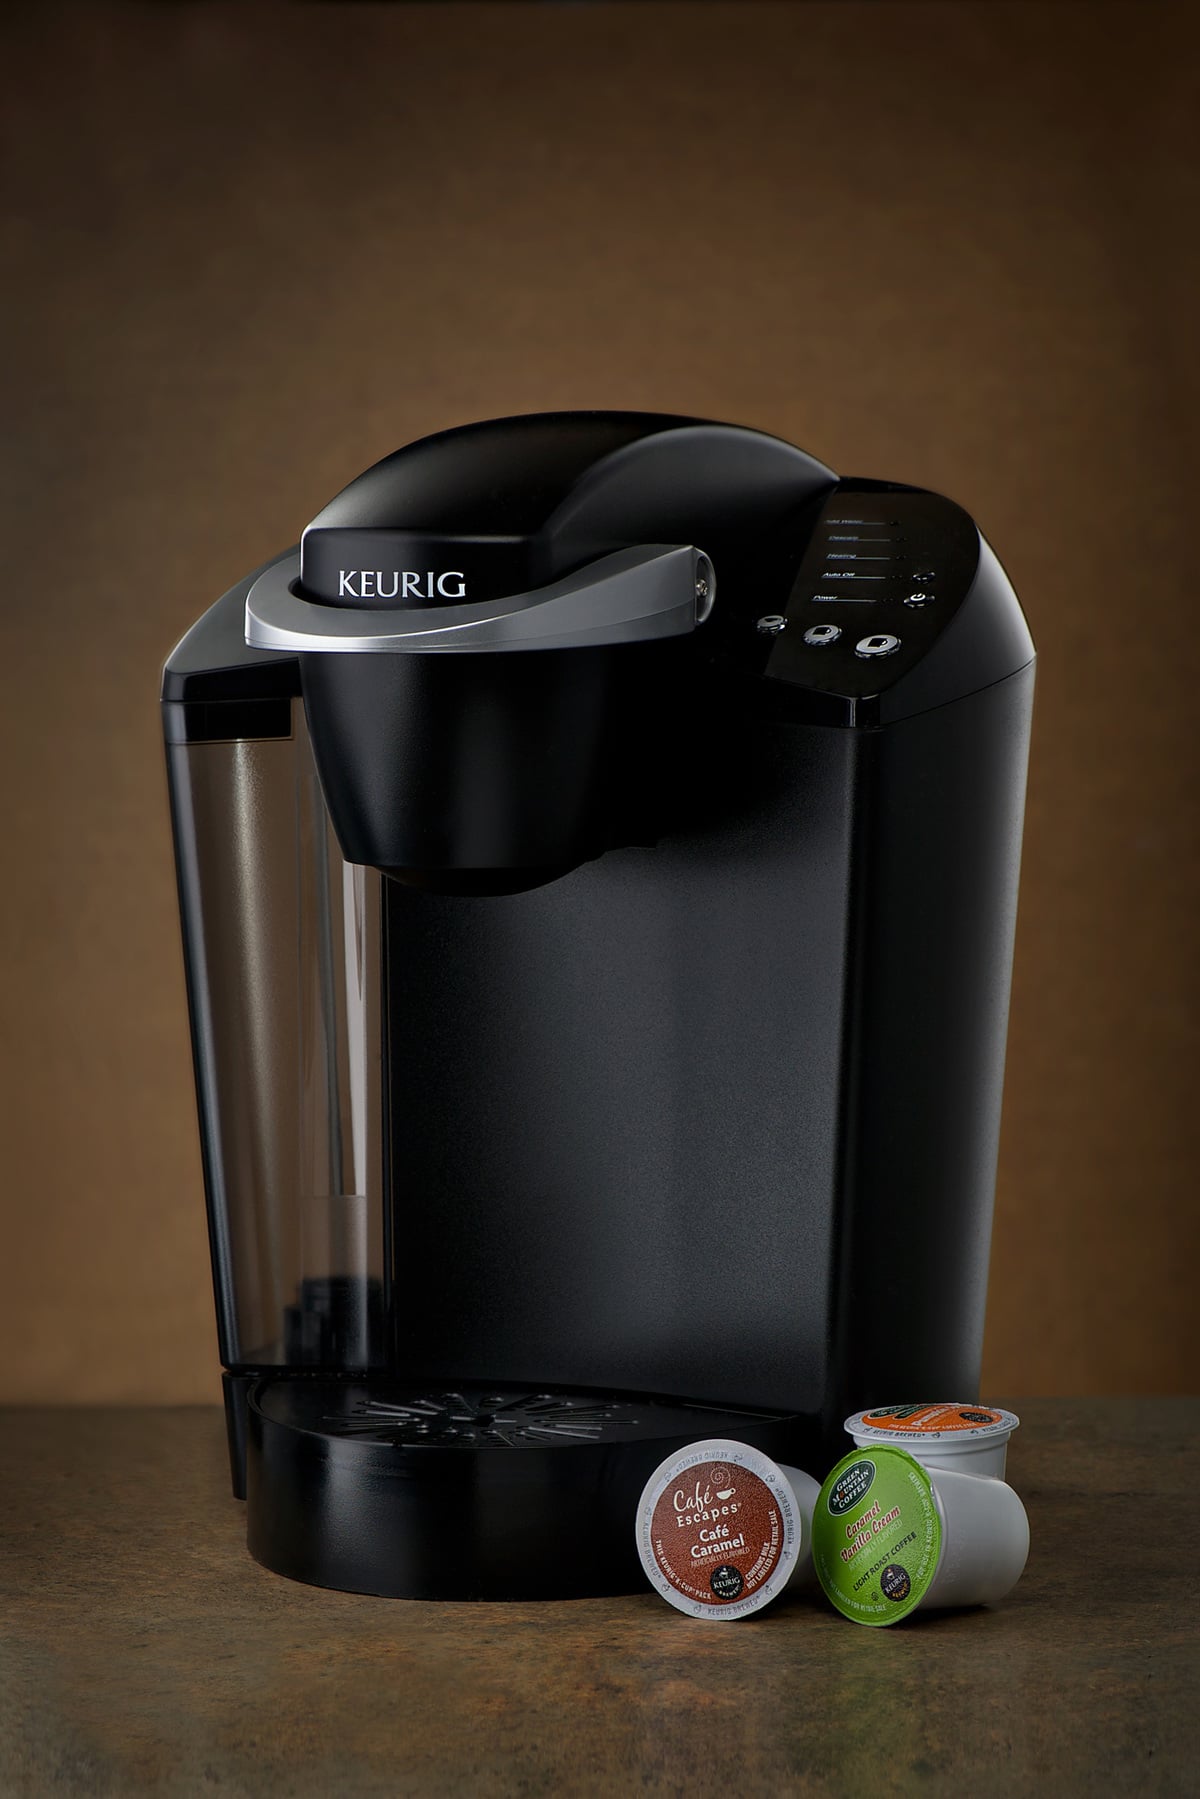 Keurig k-cup coffee maker with three k-cup pods. Keurig is popular